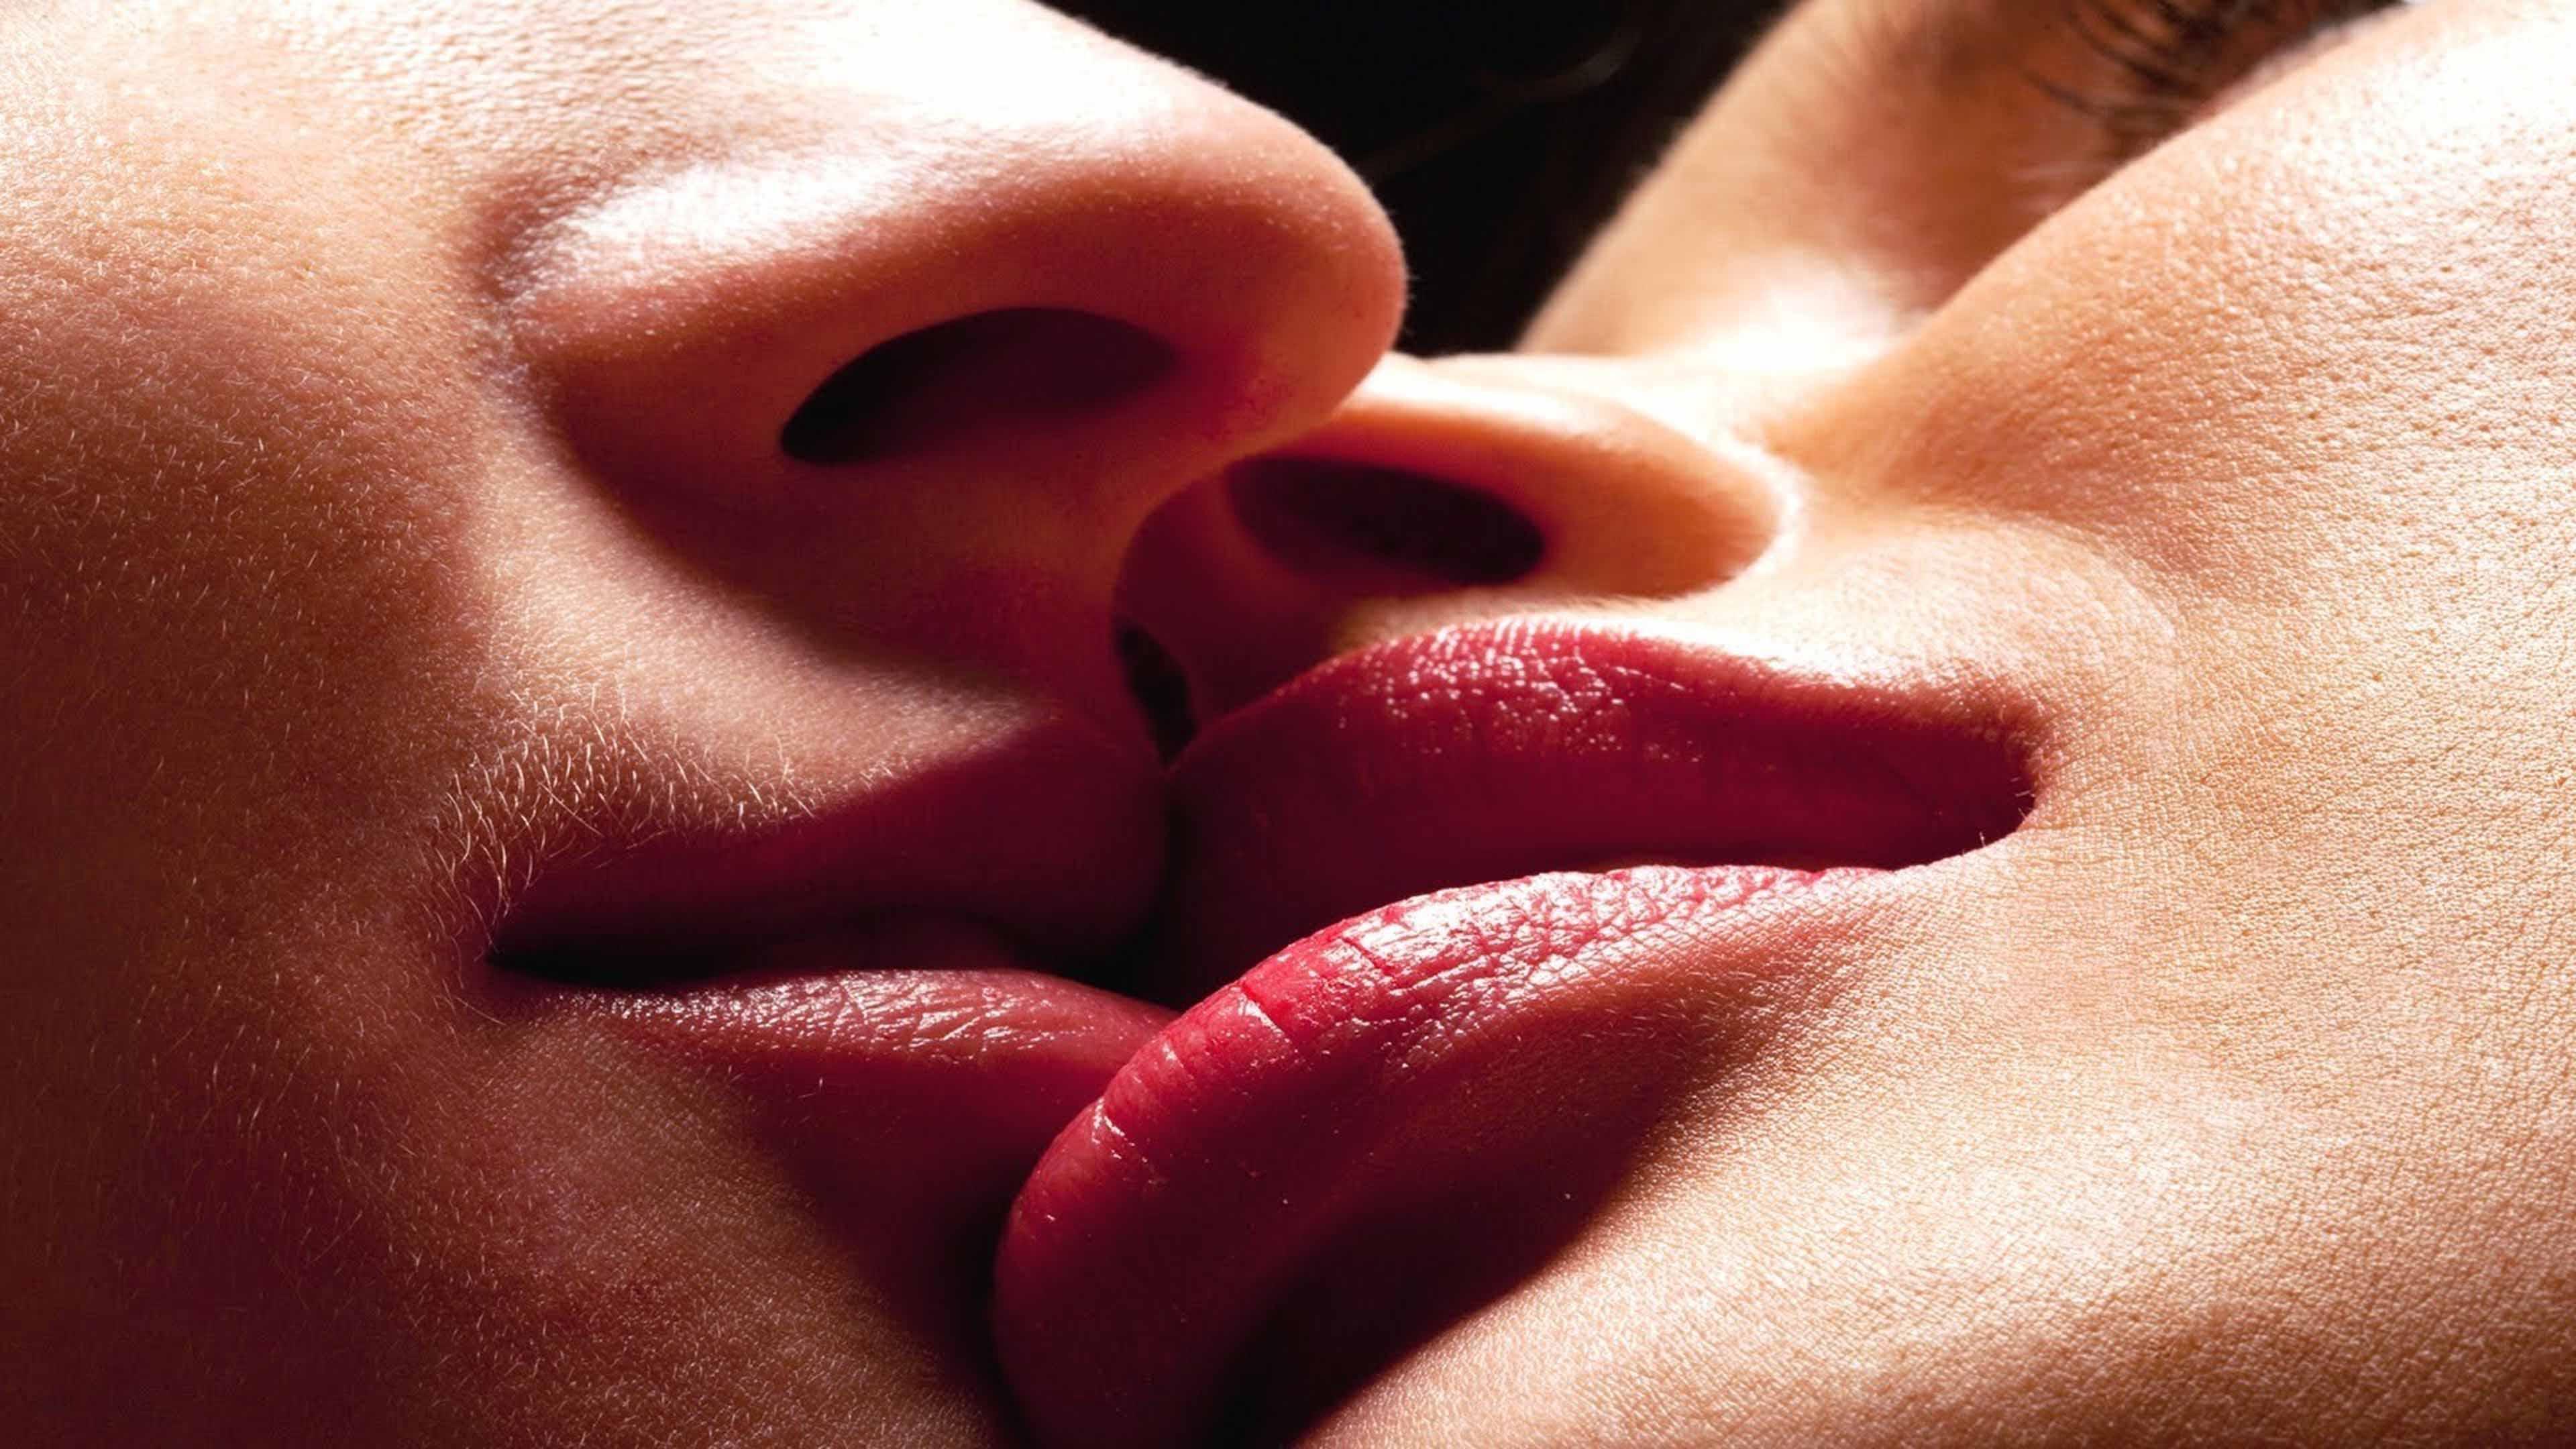 Ай я гуляла в губы целовала. Поцелуй. Чувственные губы. Поцелуй в губы. Фото поцелуя в губы.